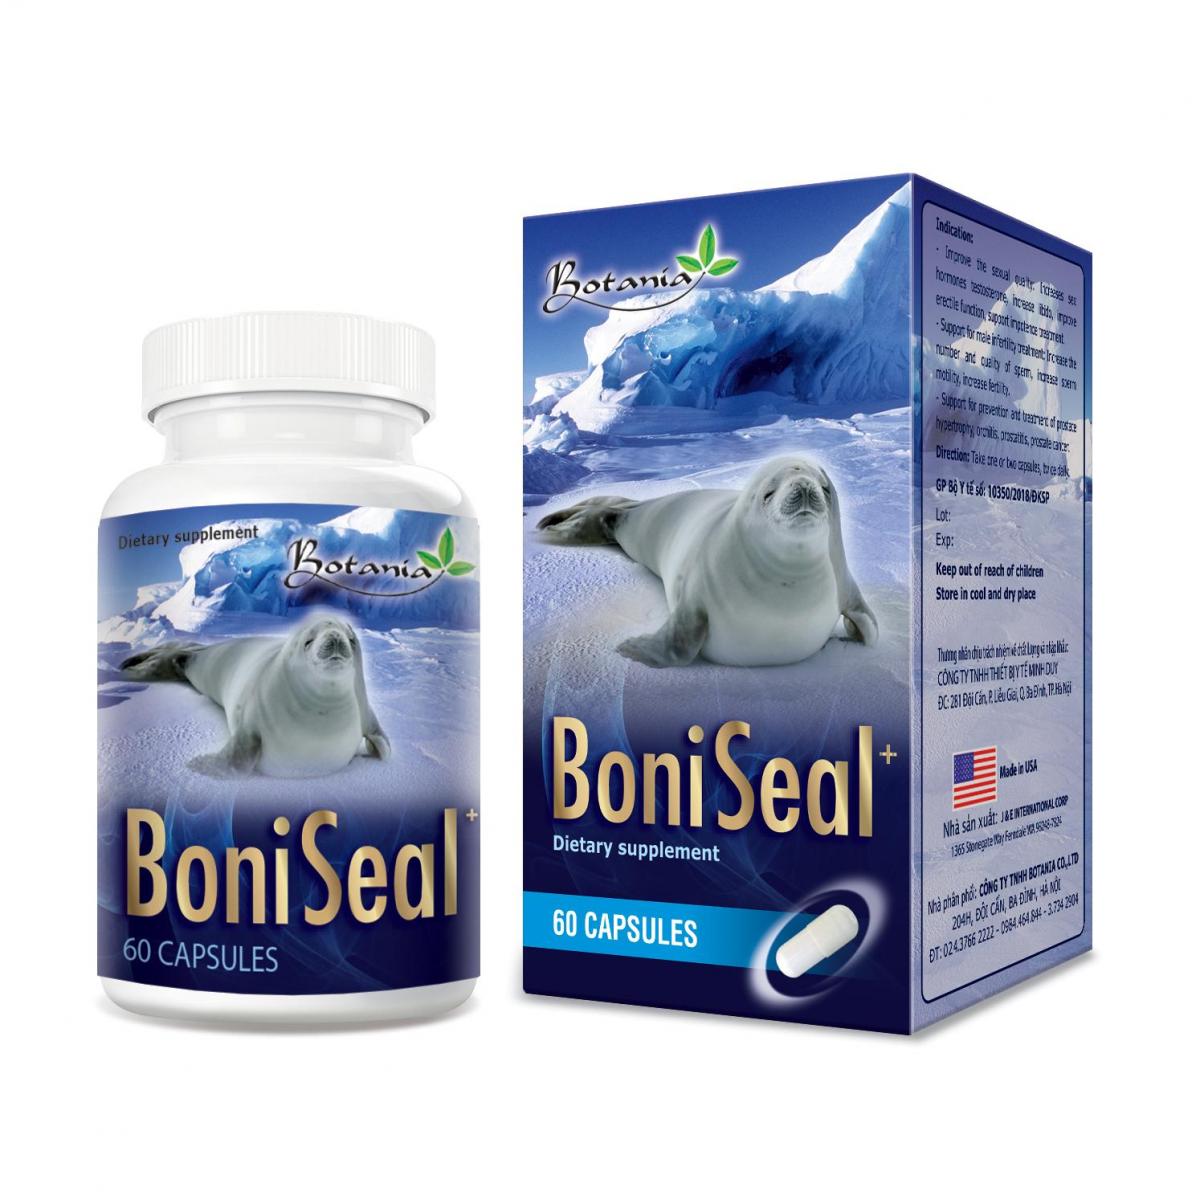 BoniSeal + - Giải pháp hiệu quả khắc phục rối loạn cương dương ở người trẻ